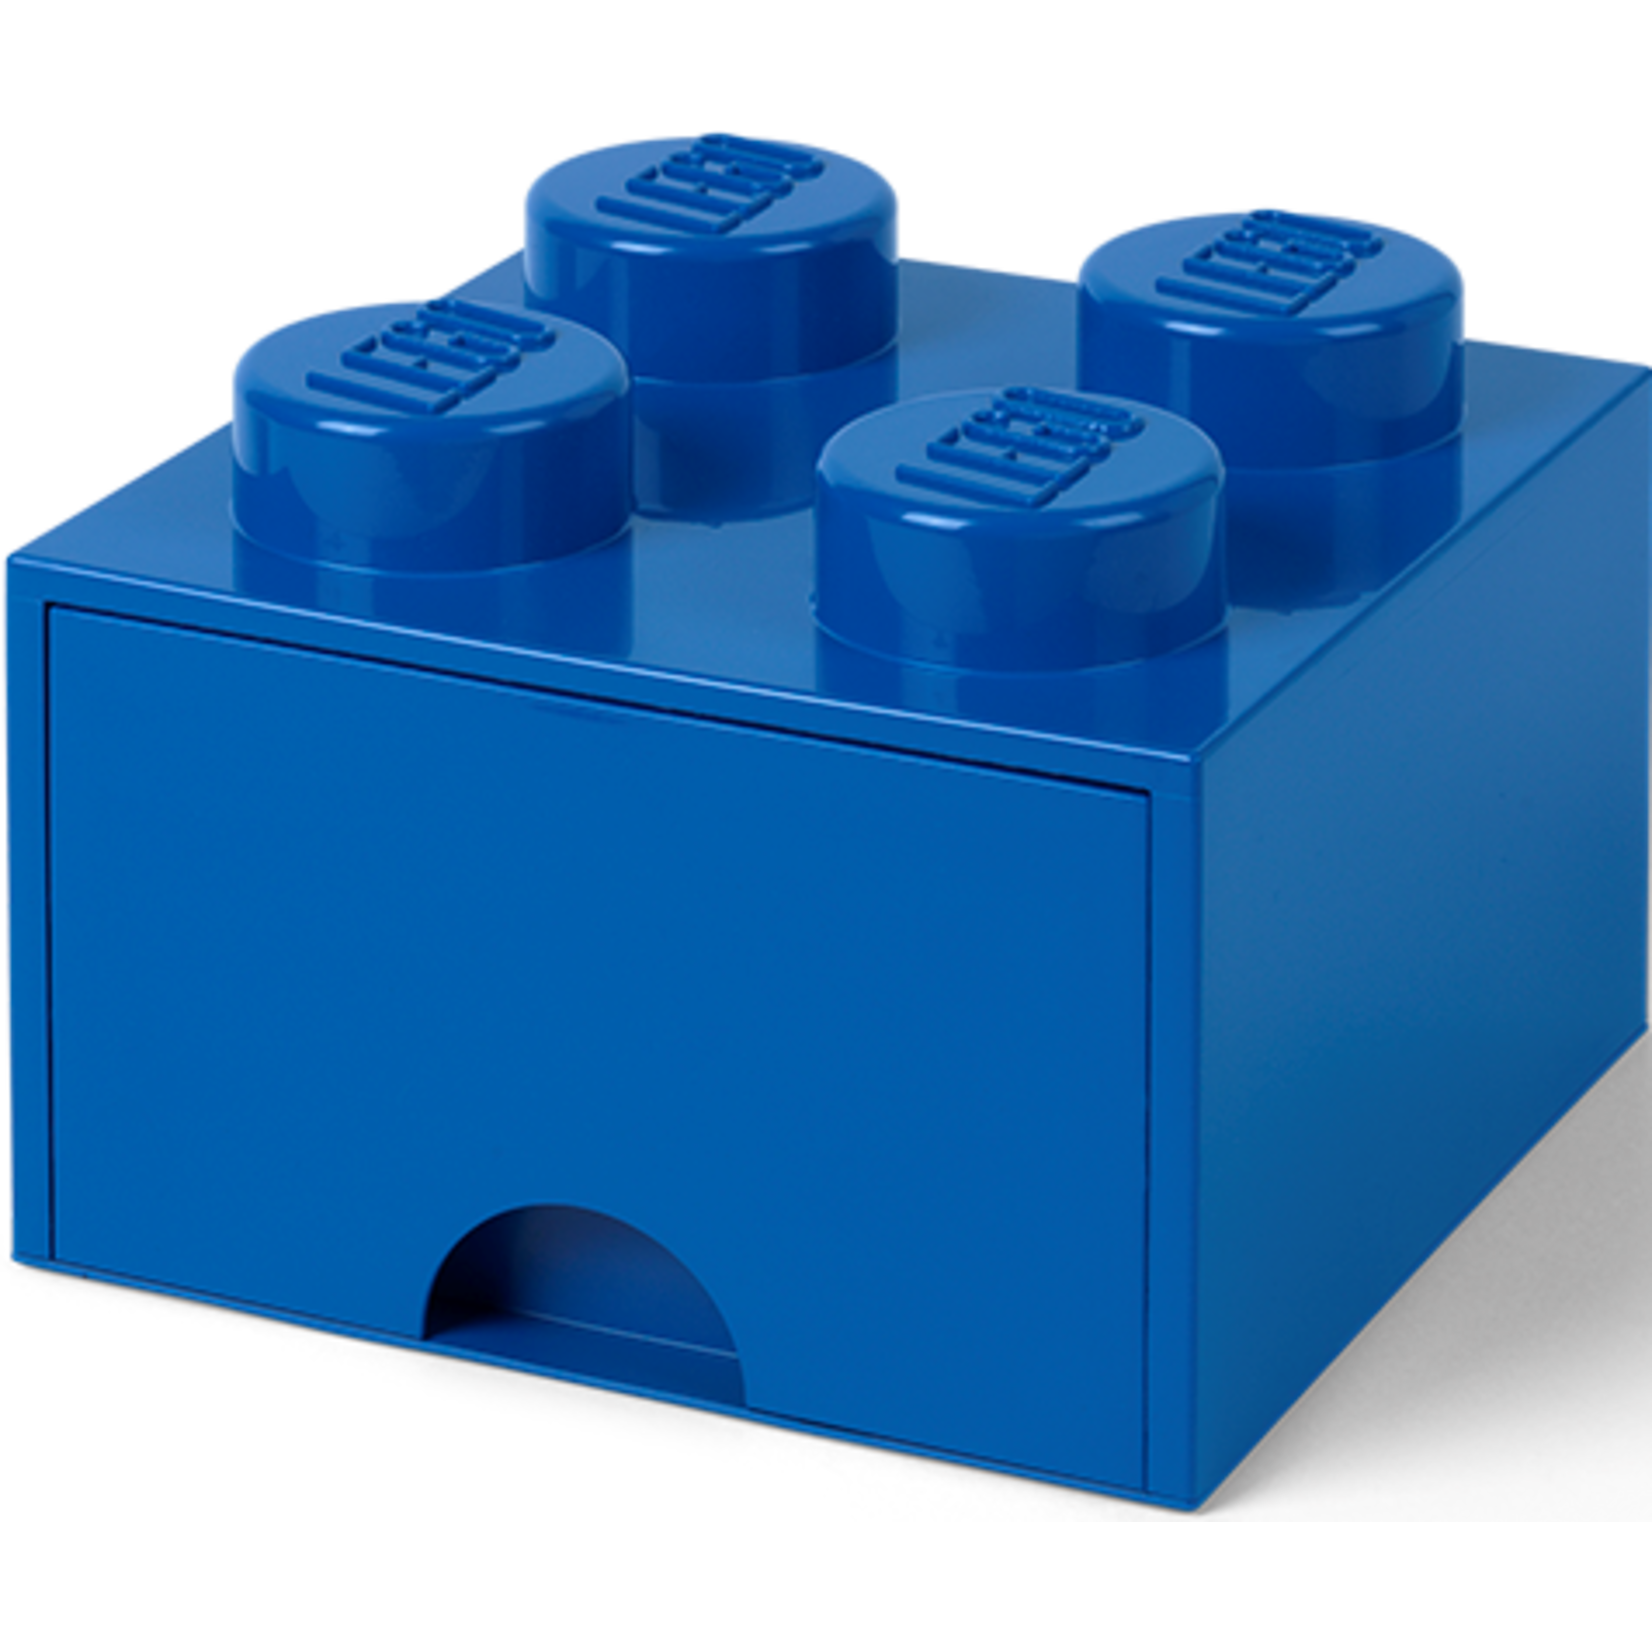 LEGO 4005 LEGO Brick Drawer 4 - Bright Blue